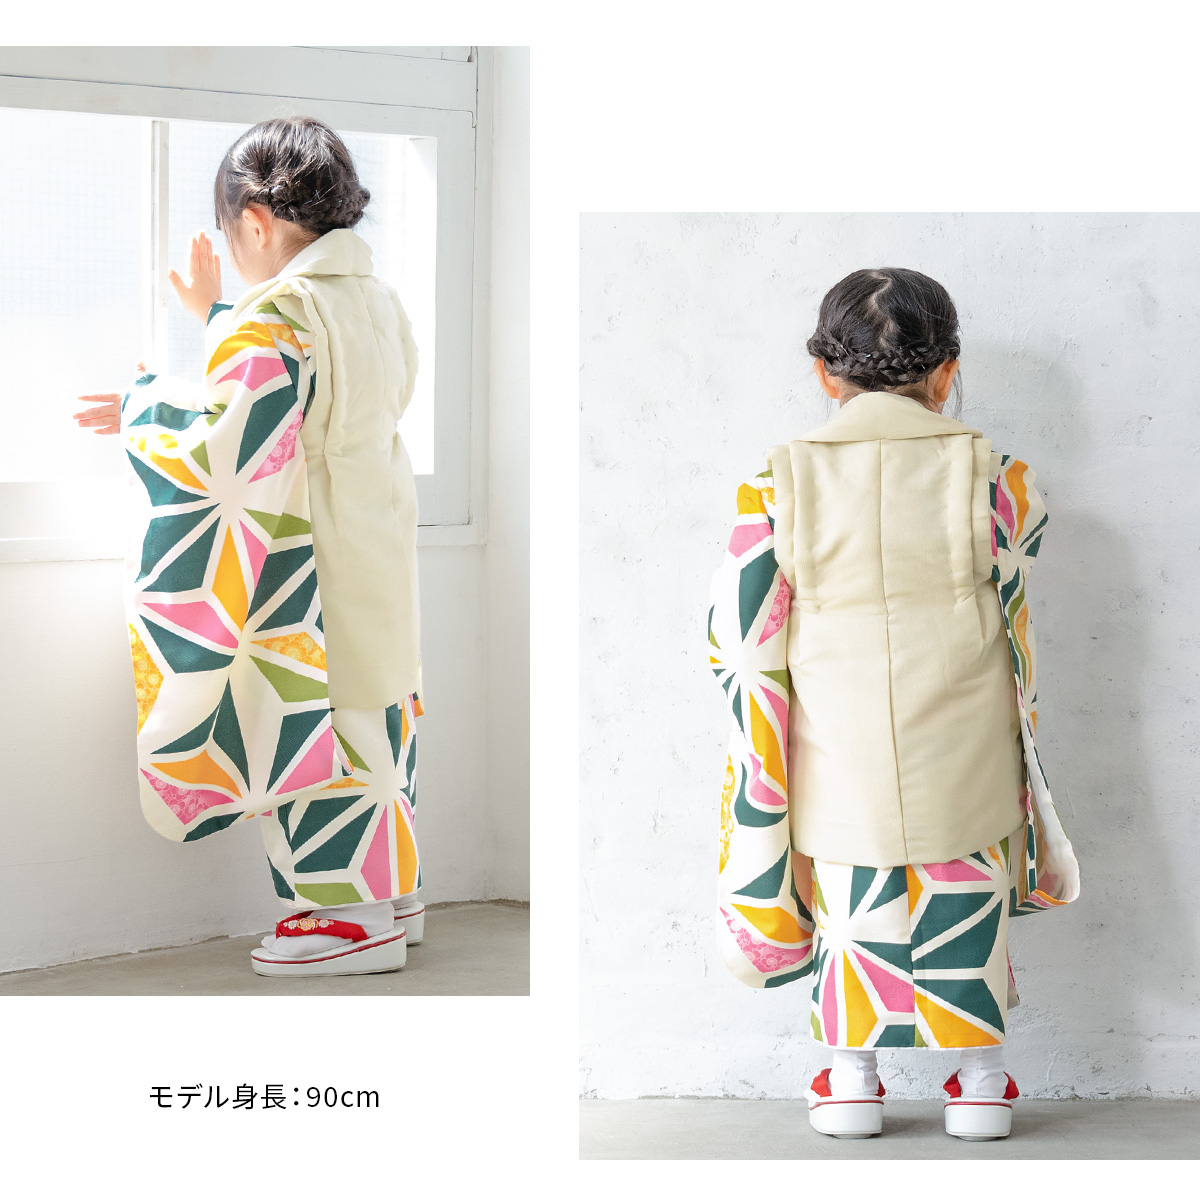  "Семь, пять, три" кимоно 3 лет распродажа девочка три лет кимоно комплект . ткань комплект крем красочный лен. лист кимоно hifu кимоно японская одежда японский костюм женщина . ребенок бесплатная доставка 